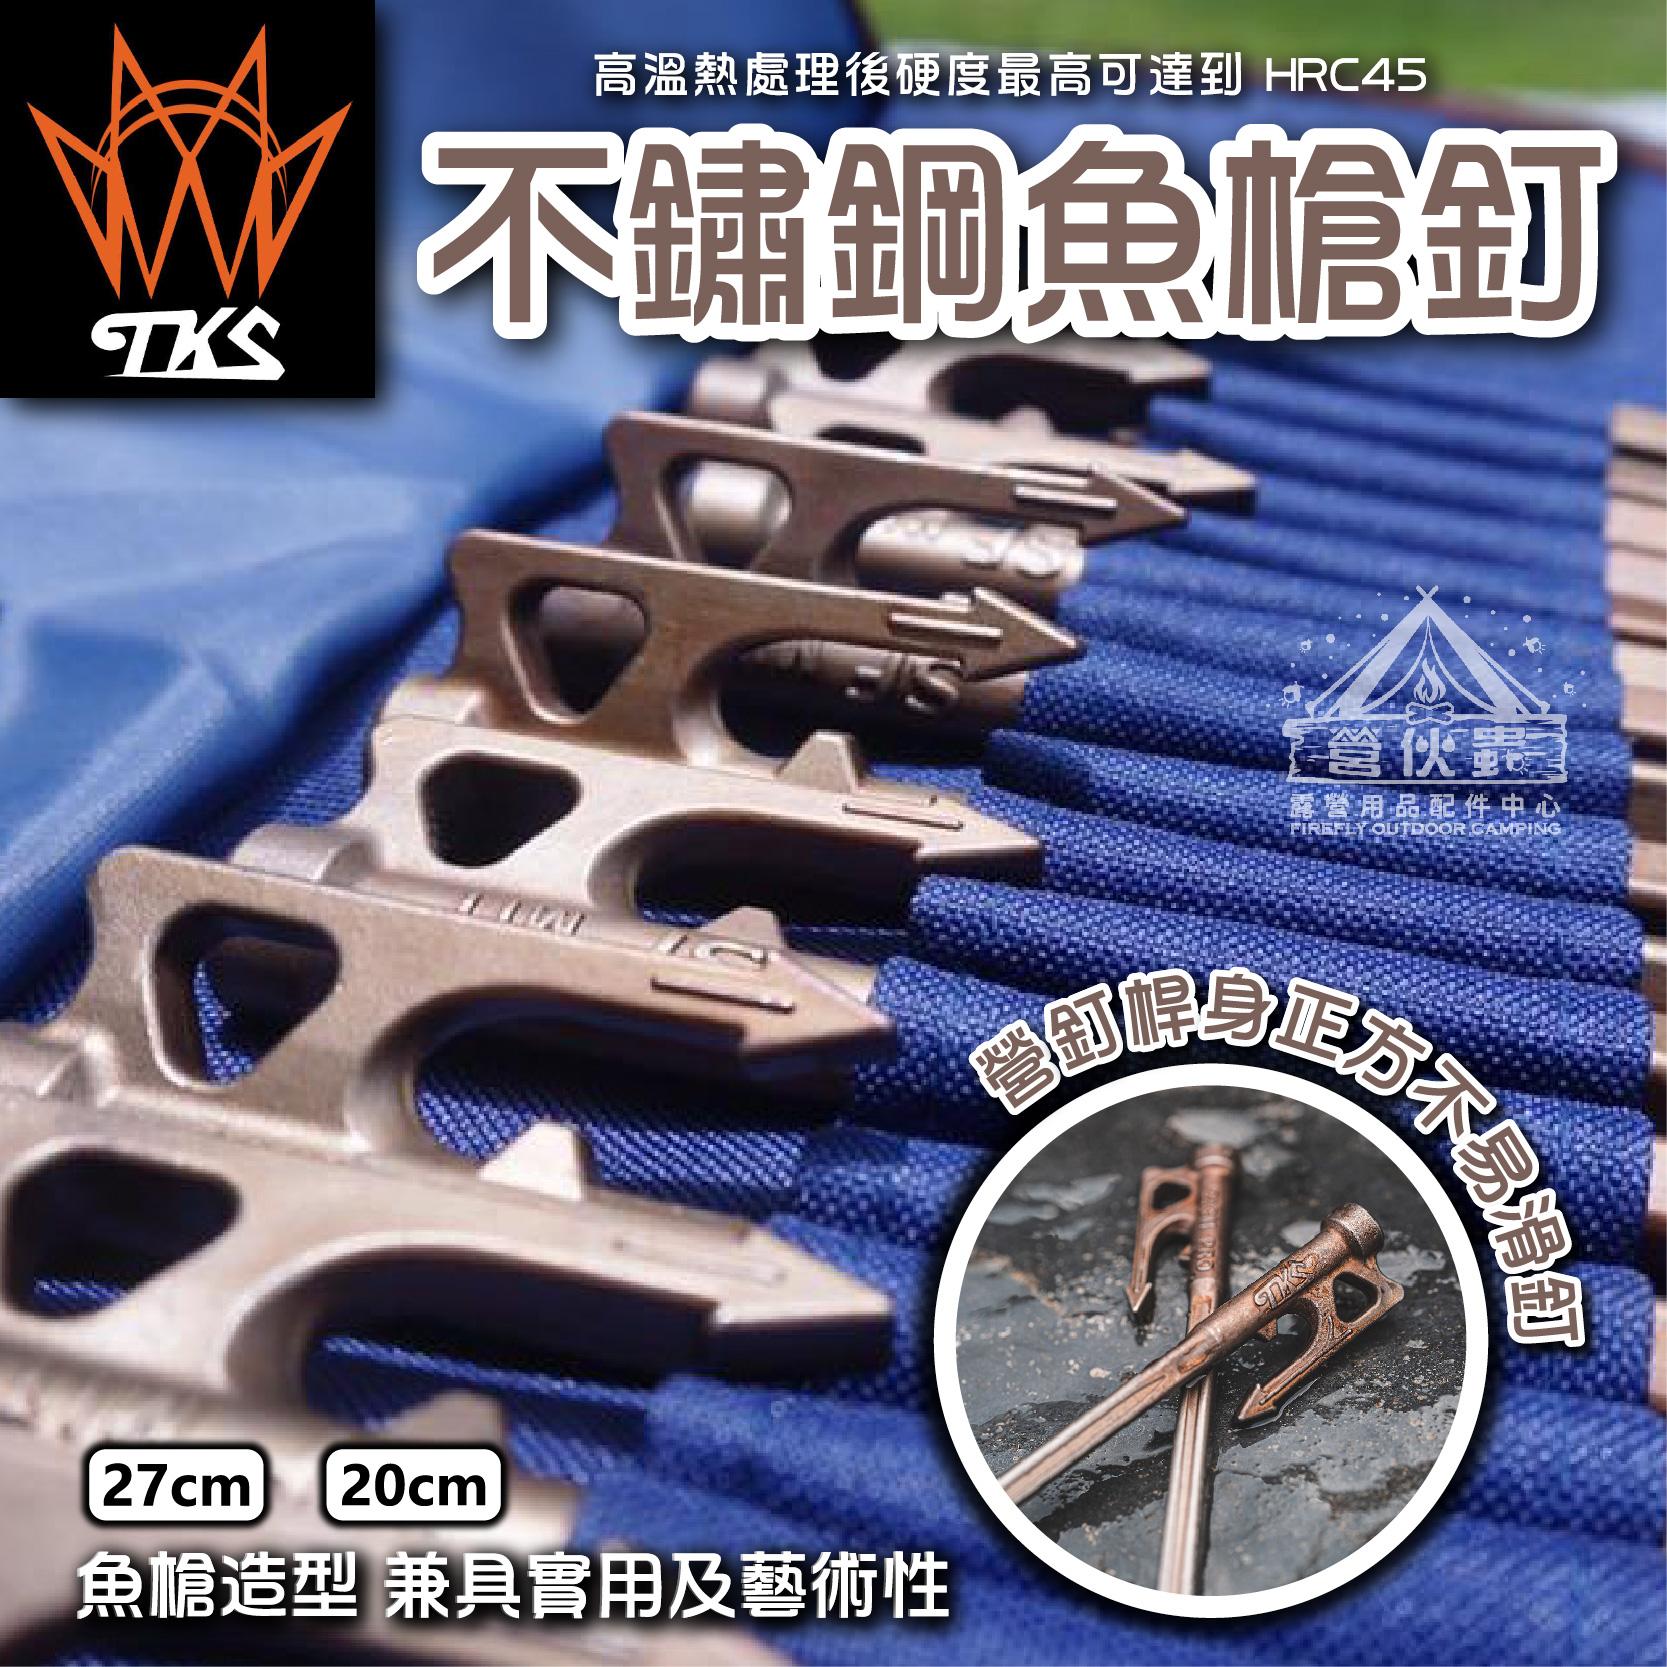 【營伙蟲1420】TKS 630不鏽鋼魚槍釘 PRO 22/27cm台灣製 登山 露營 野炊 營釘 仿舊 原色